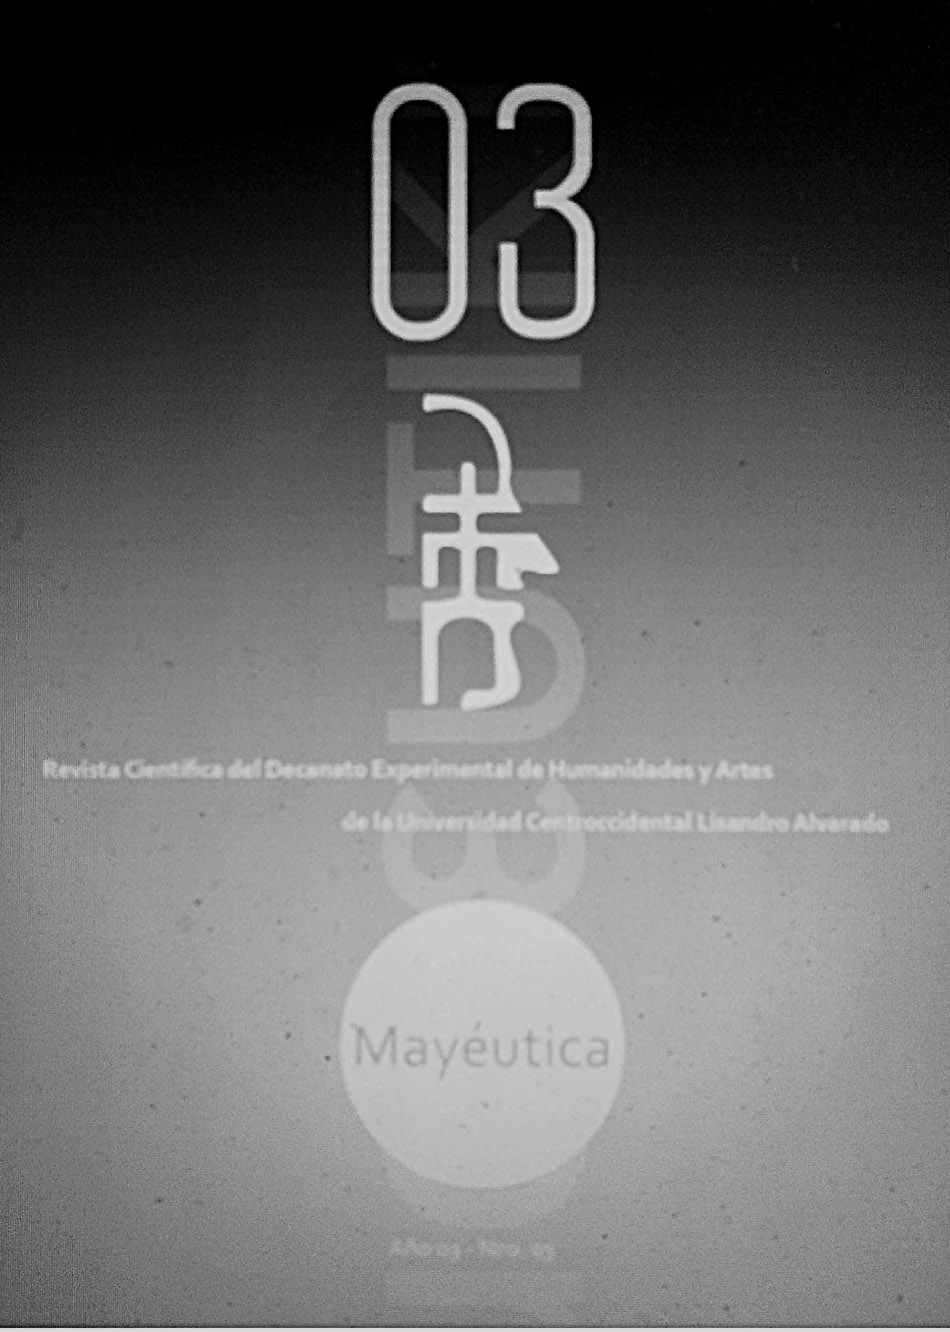 Mayéutica Revista Científica de Humanidades y Artes. Volumen 3